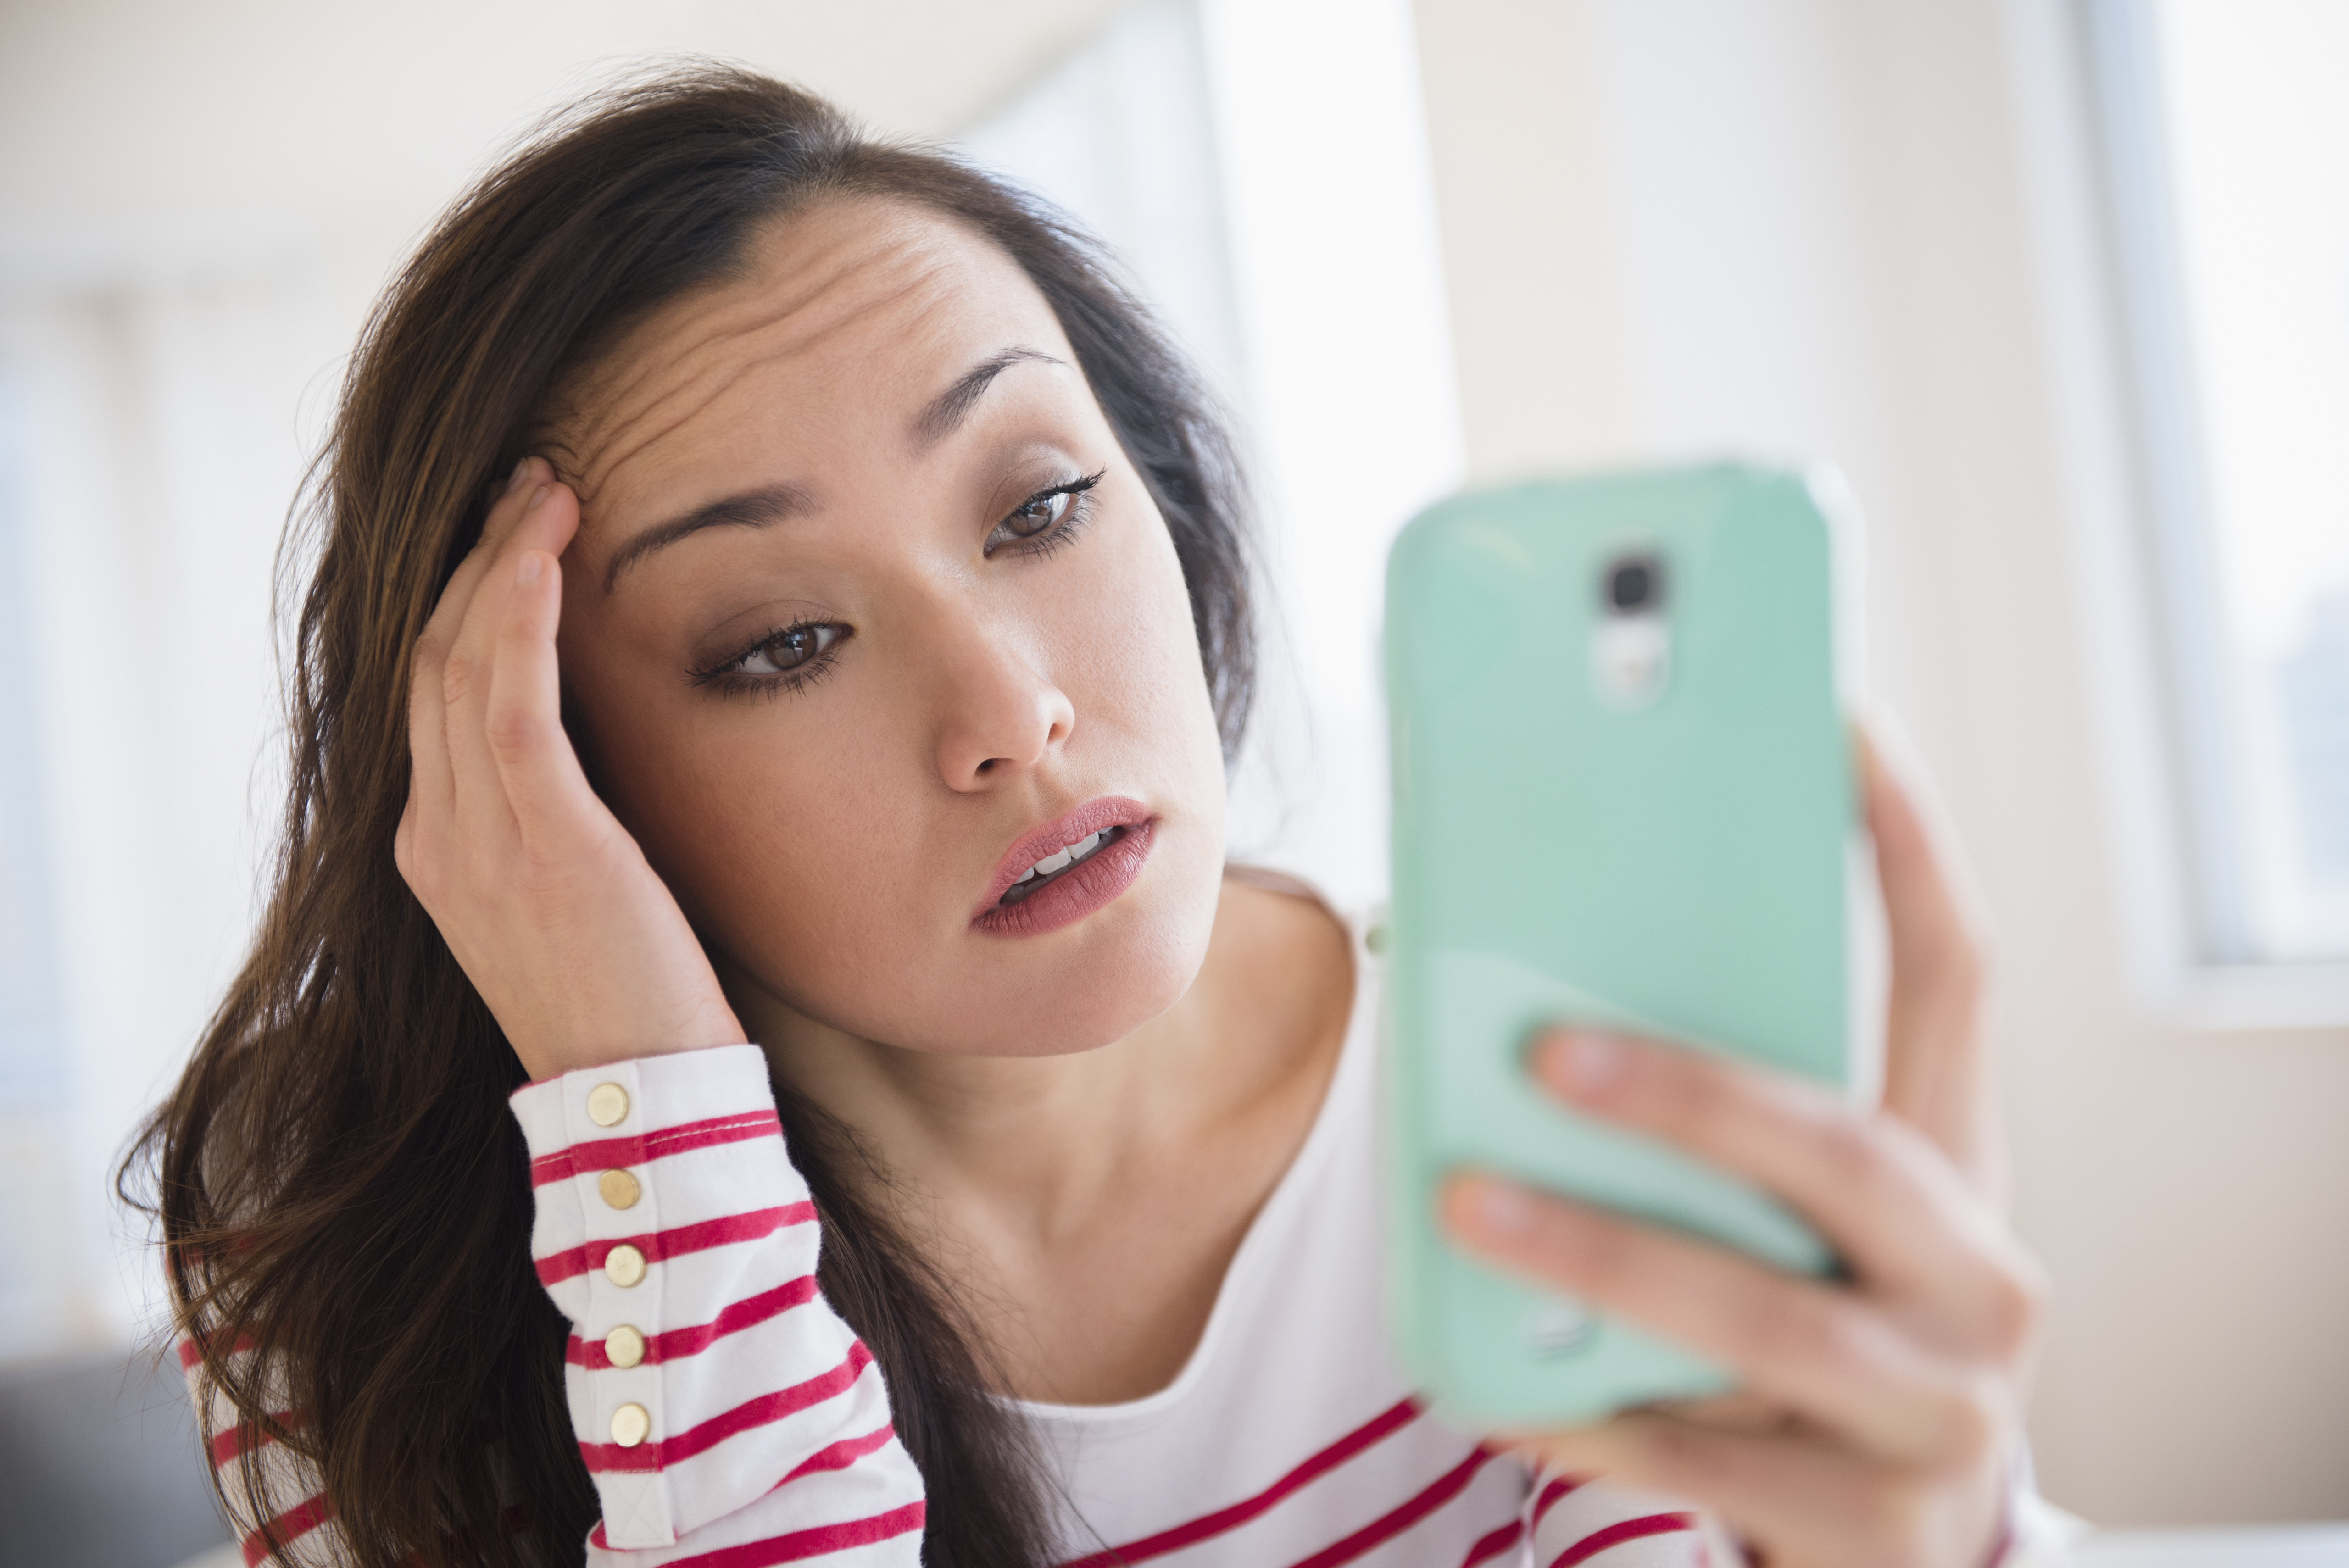 Jeune femme stressée regardant son téléphone | Source : Getty Images